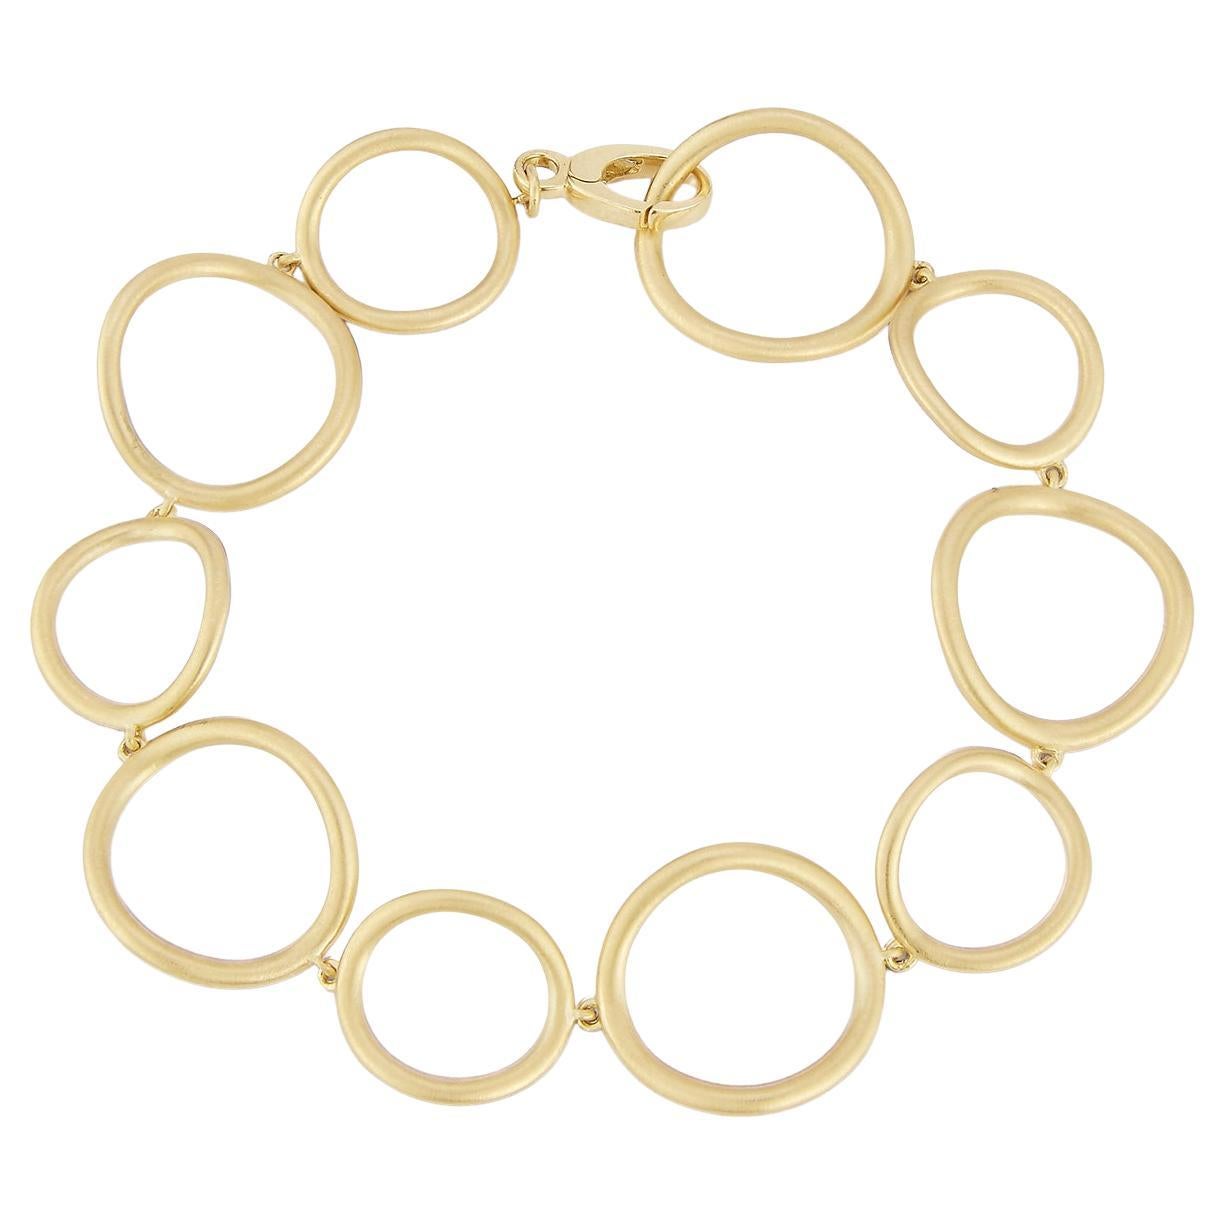 Carelle Spiralli Brushed Satin Gold Bracelet For Sale